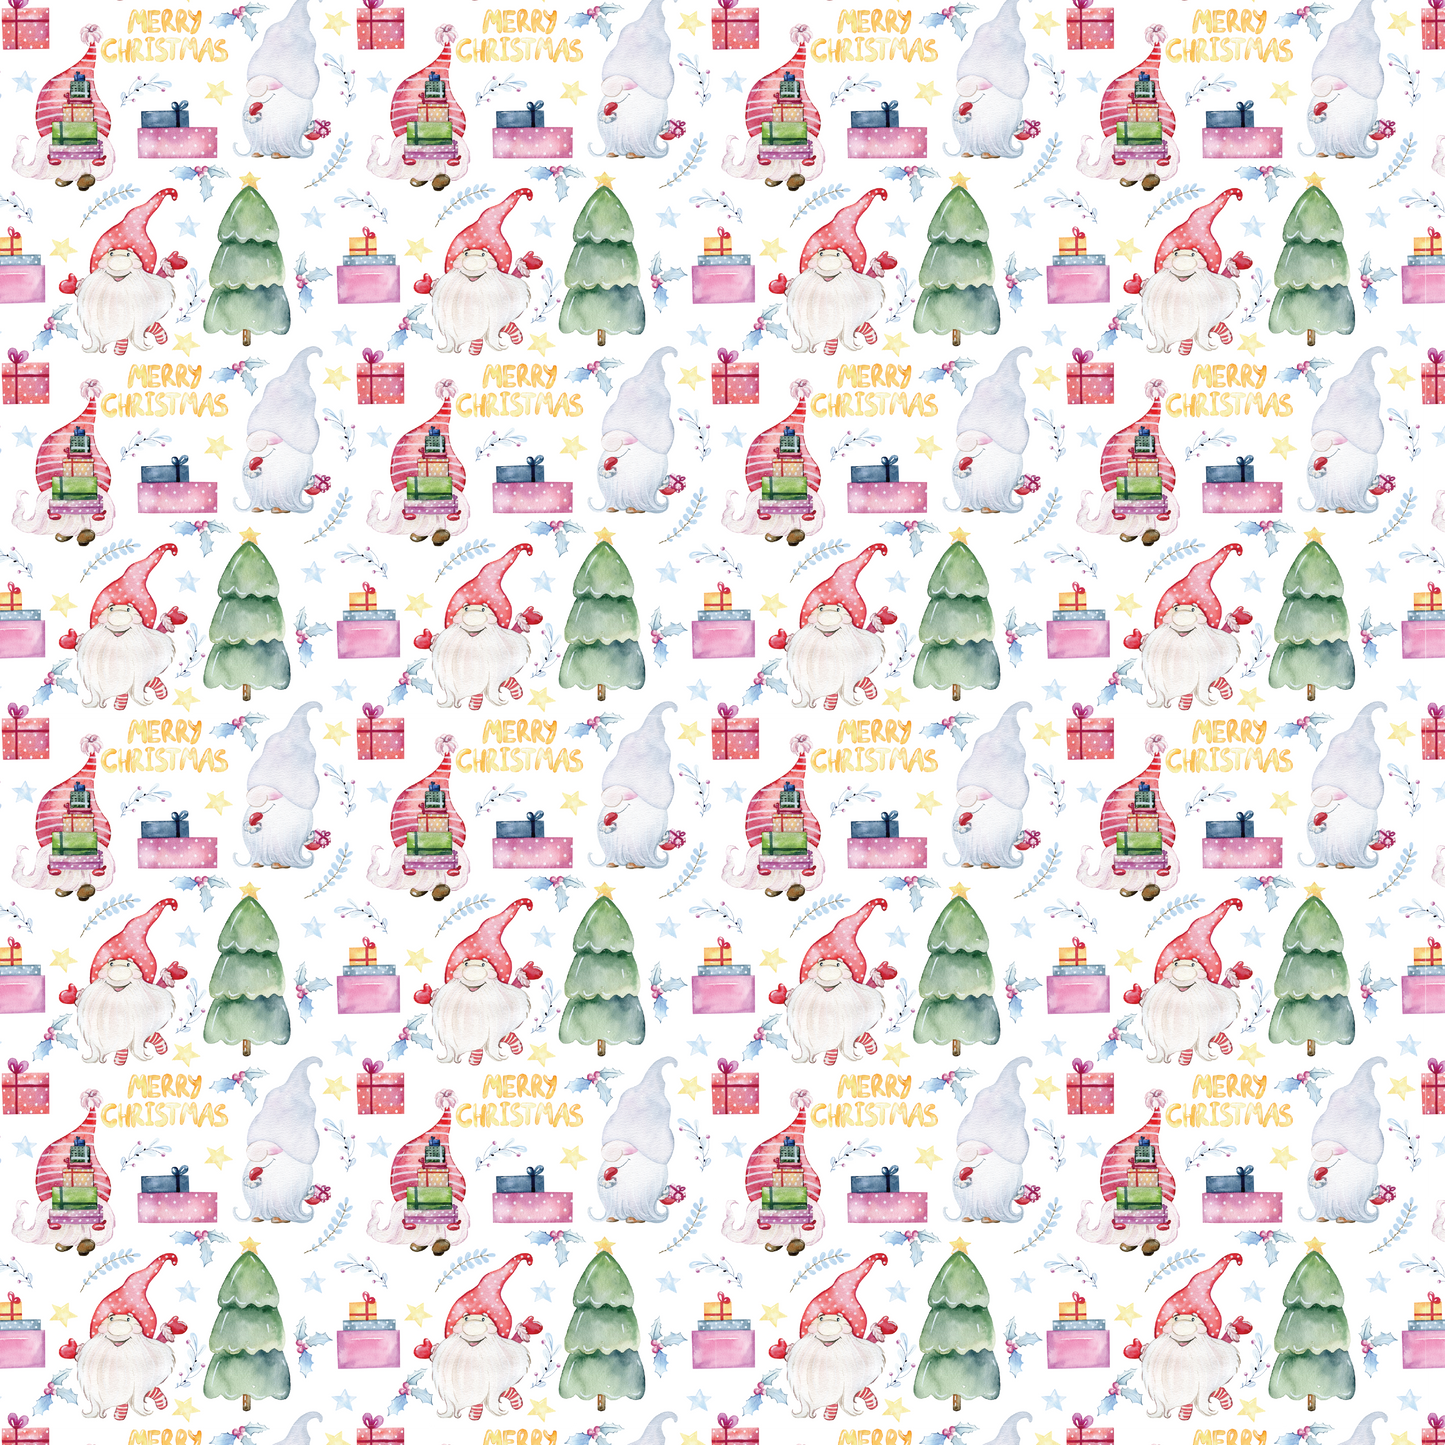 Gnome Time Like Christmas - Gnomes et arbres 004